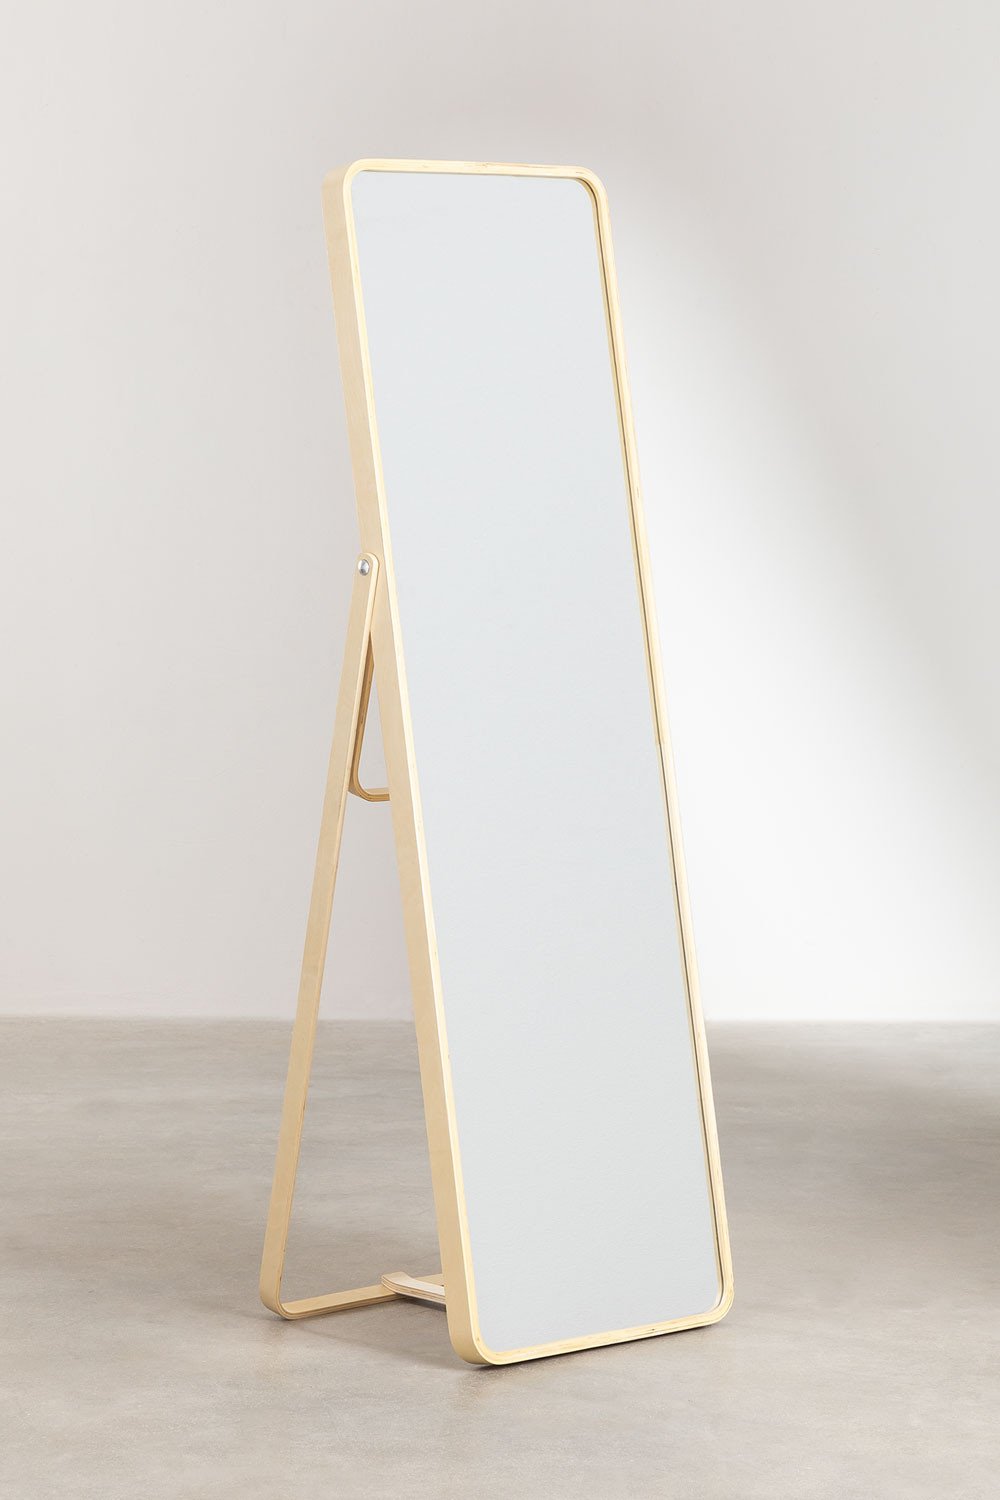 Specchio da terra rettangolare in legno di pino (173x55 cm) Ony, immagine della galleria 1